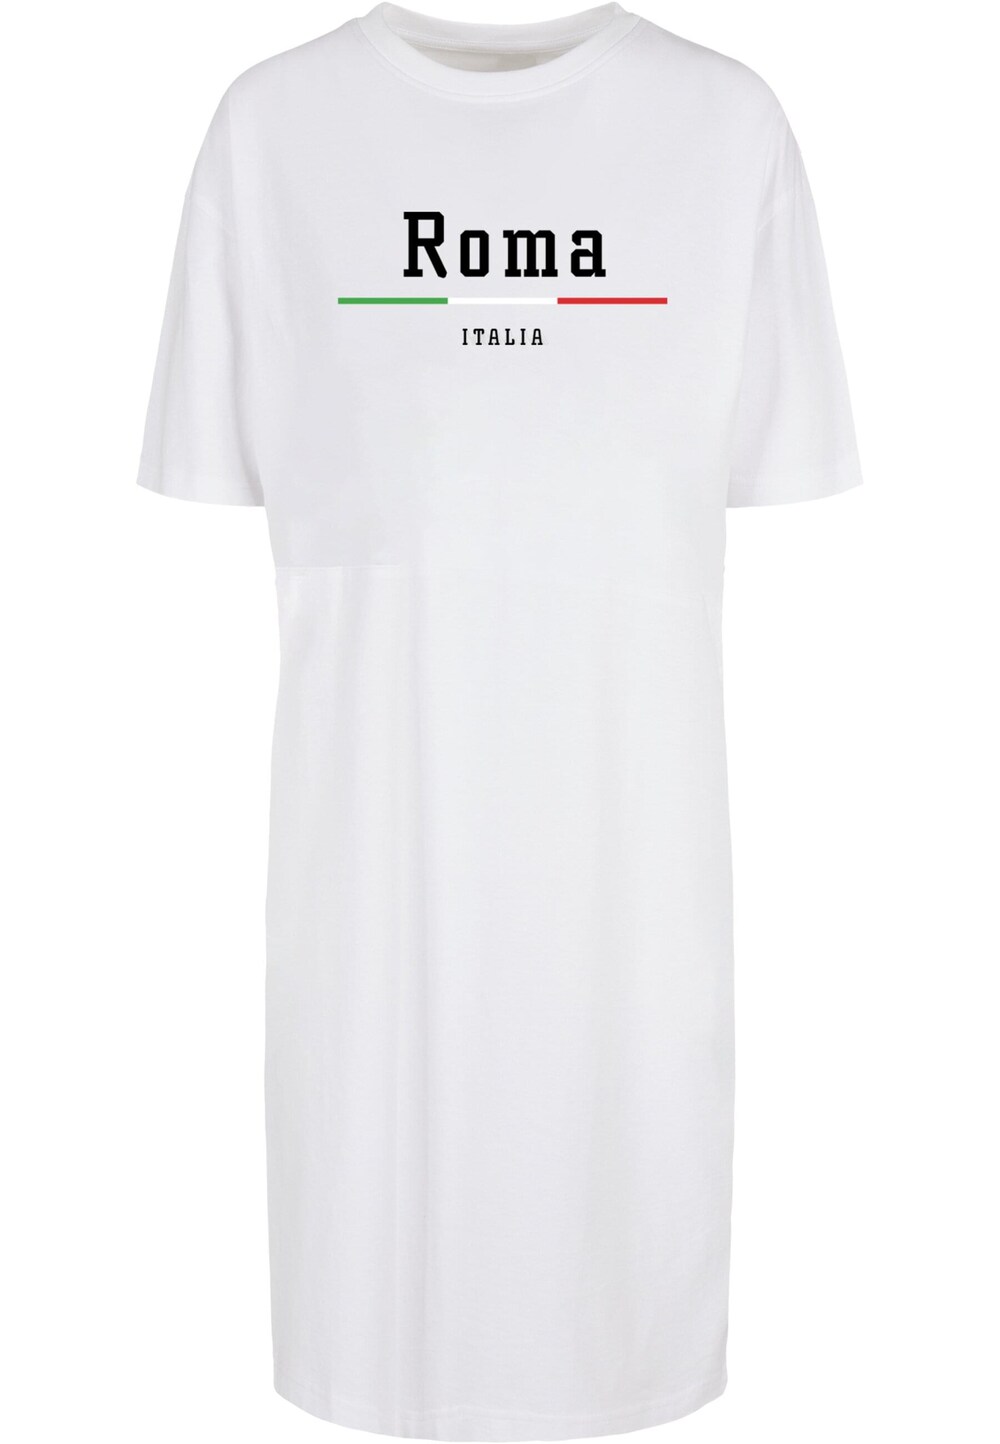 платье roma uvarov design зелёный m Платье Merchcode Roma, белый